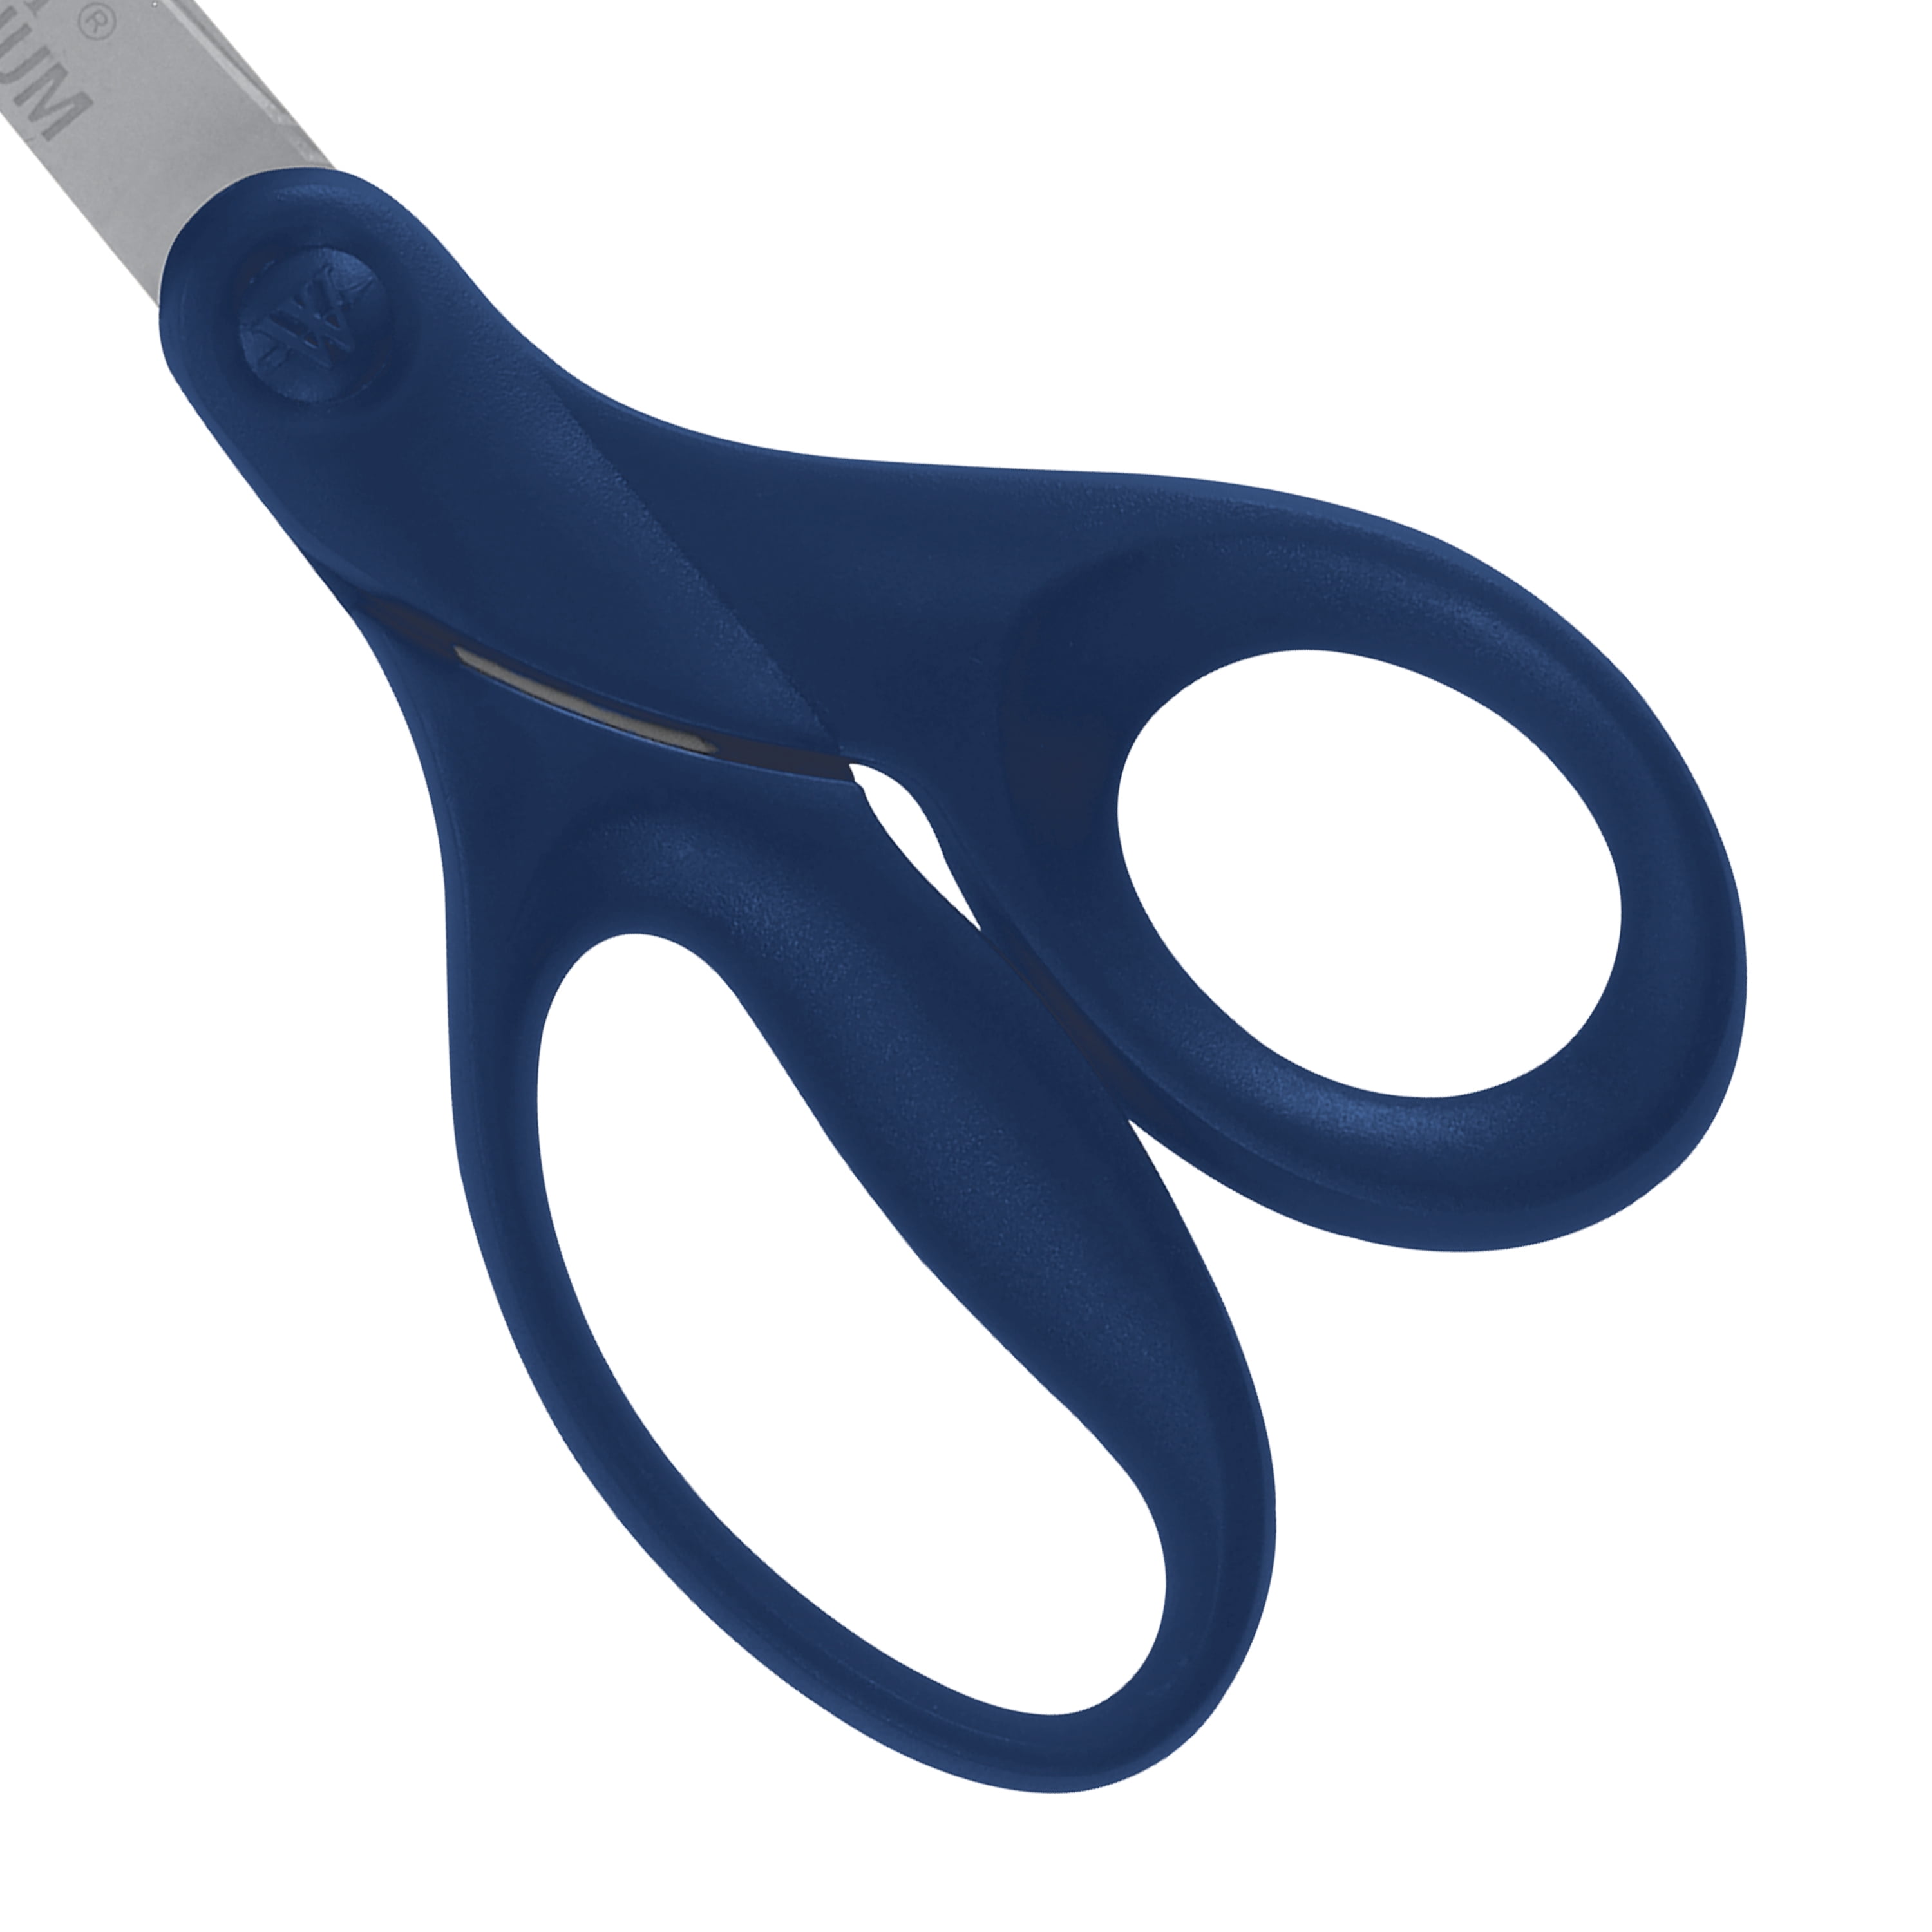 Chicago Cutlery Deluxe Scissors, Dark Blue 